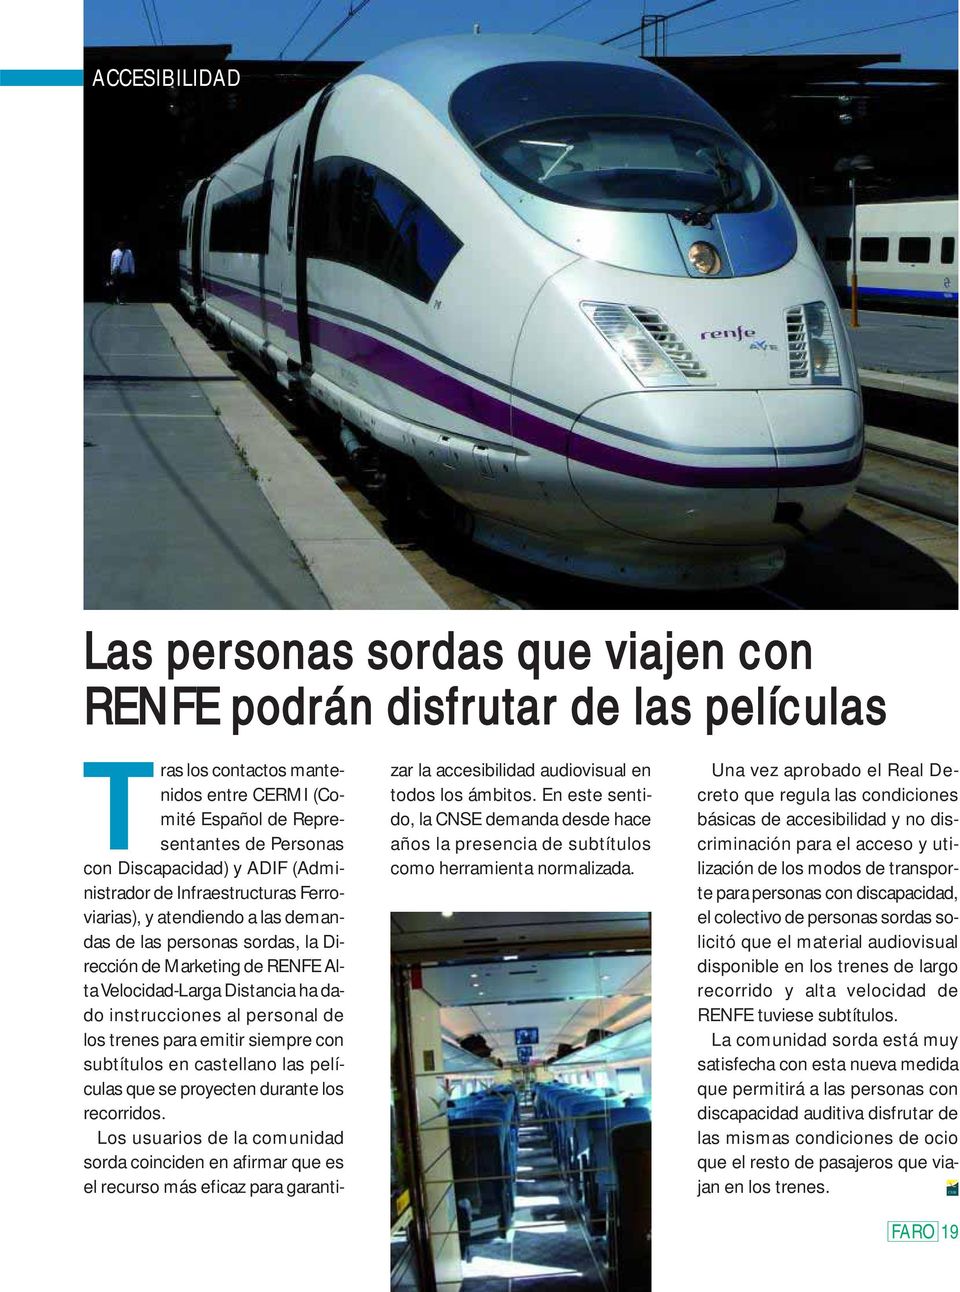 personal de los trenes para emitir siempre con subtítulos en castellano las películas que se proyecten durante los recorridos.